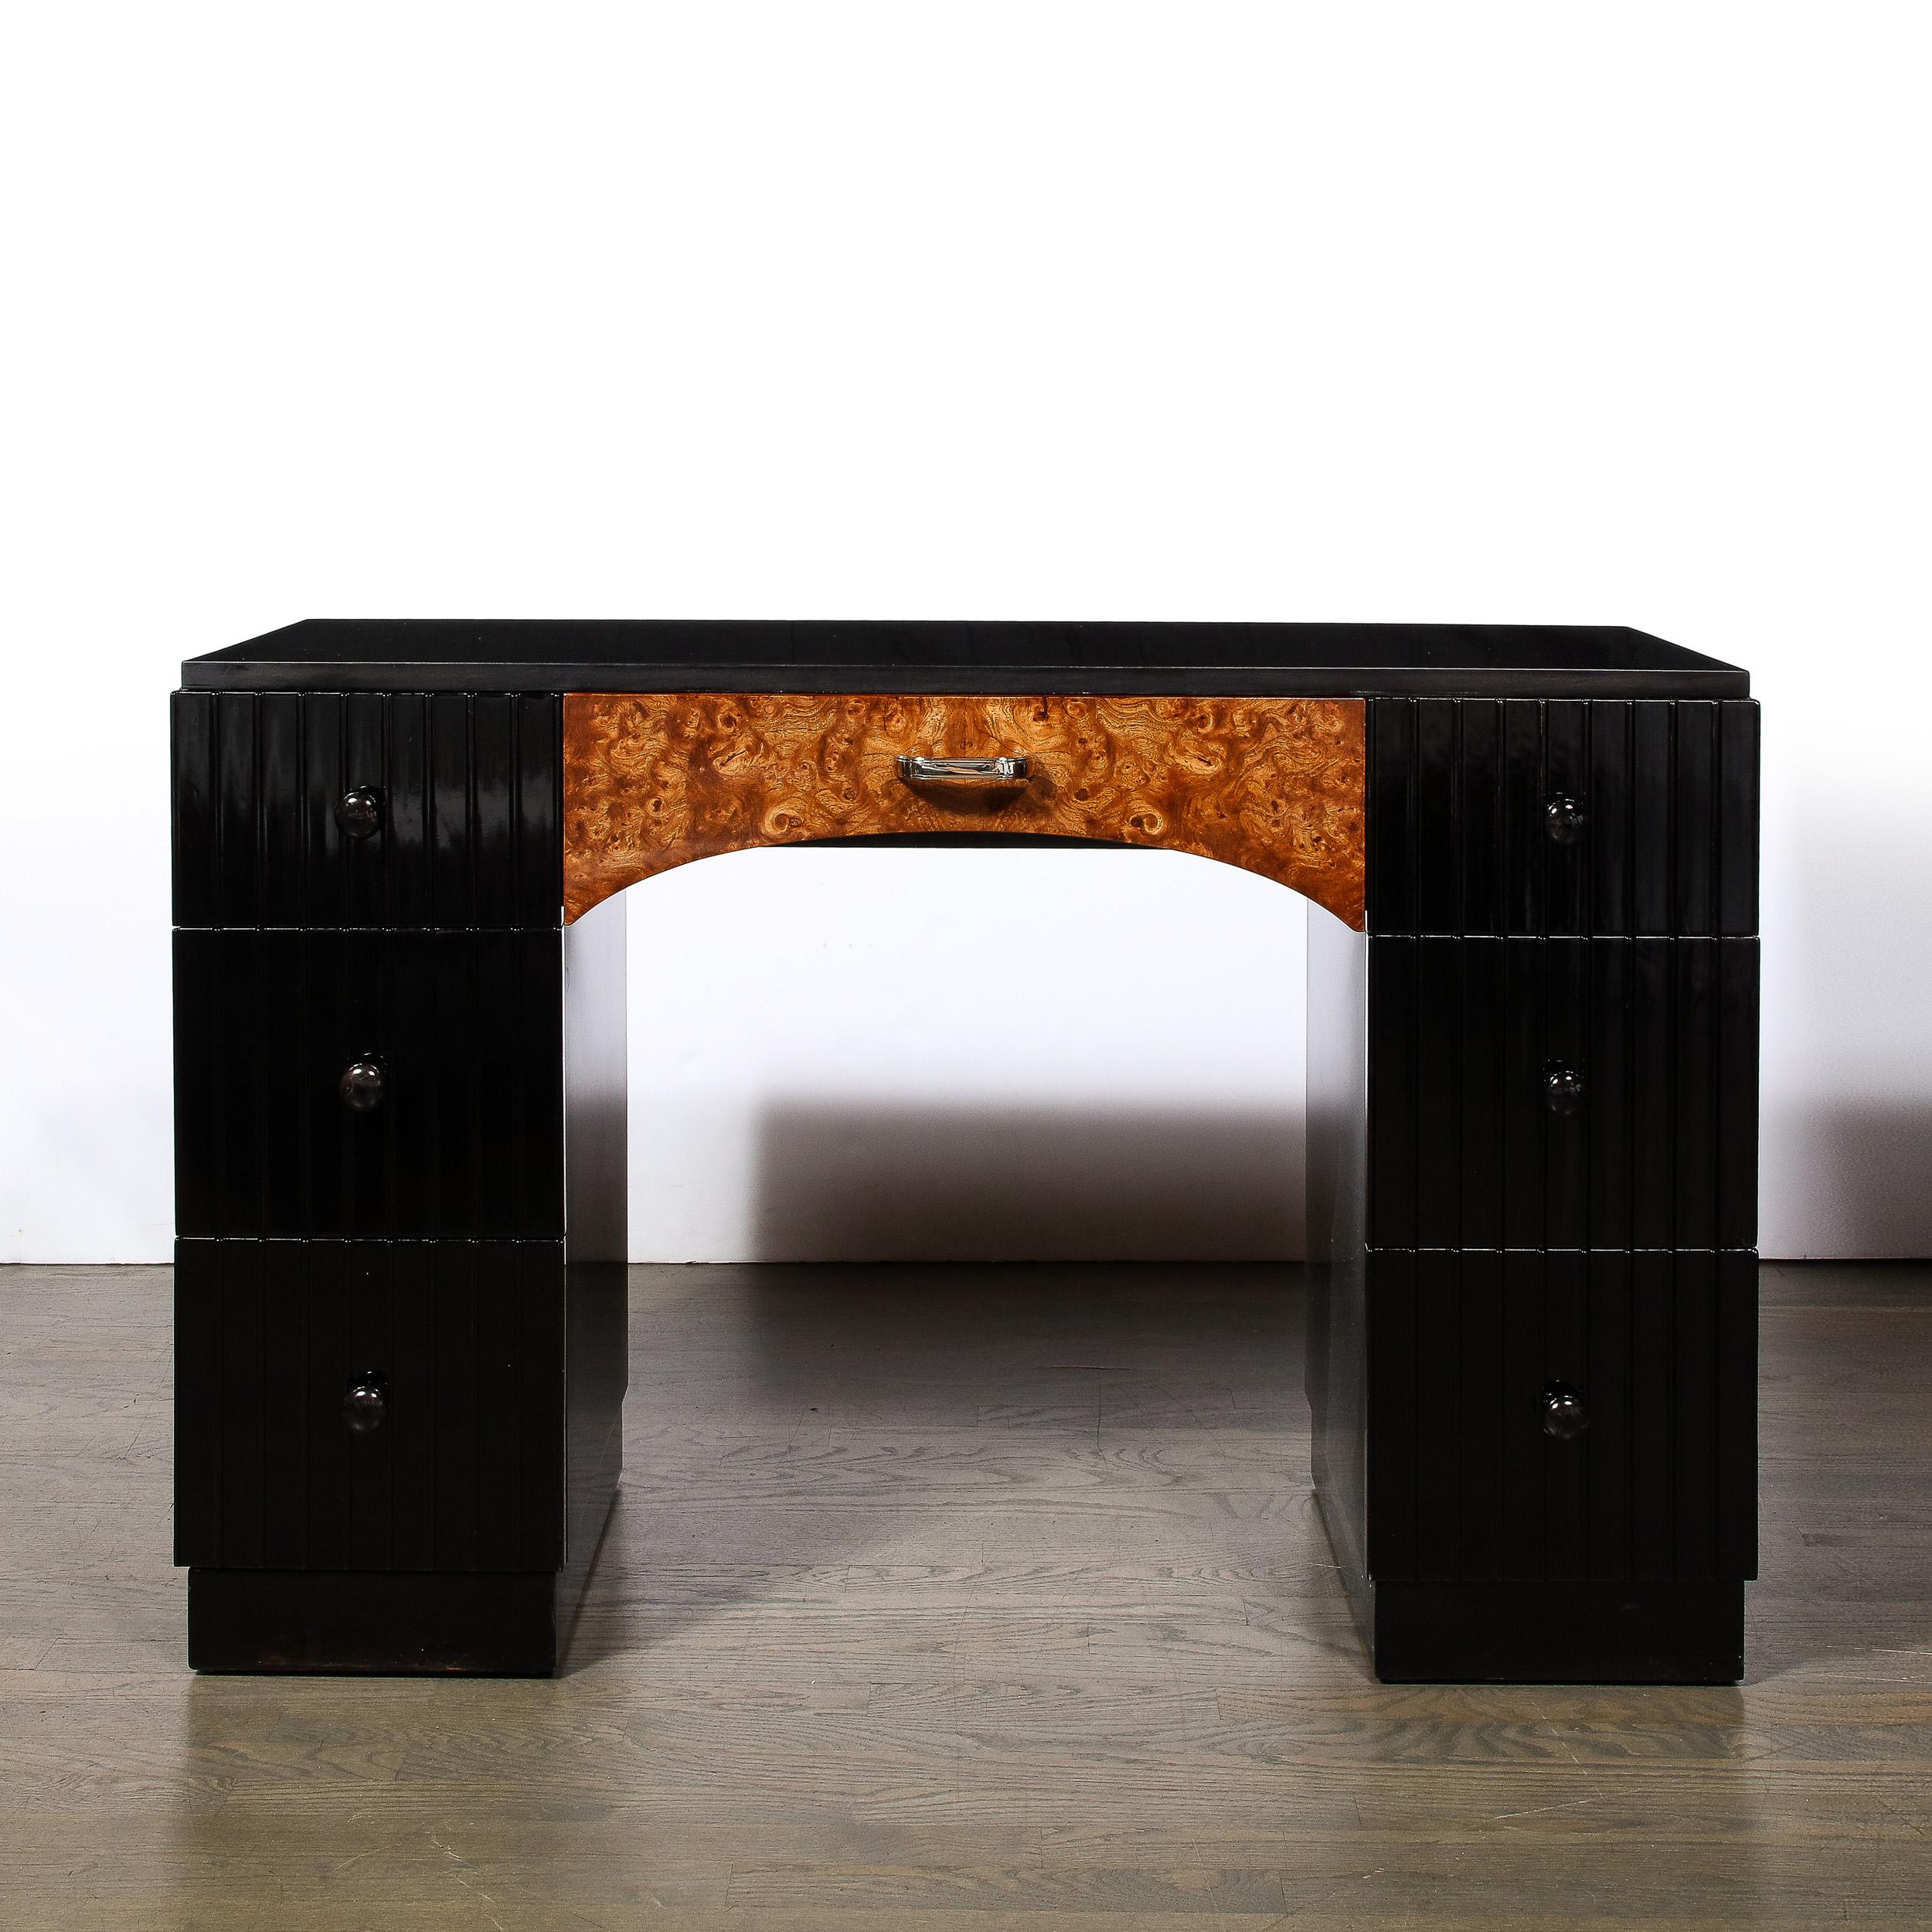 Ce meuble-lavabo / bureau Art déco, originaire des Etats-Unis vers 1935, est un brillant exemple du style Art déco et des techniques de fabrication. Fabriquée entièrement en noyer et finie en laque noire, la qualité des matériaux et de la